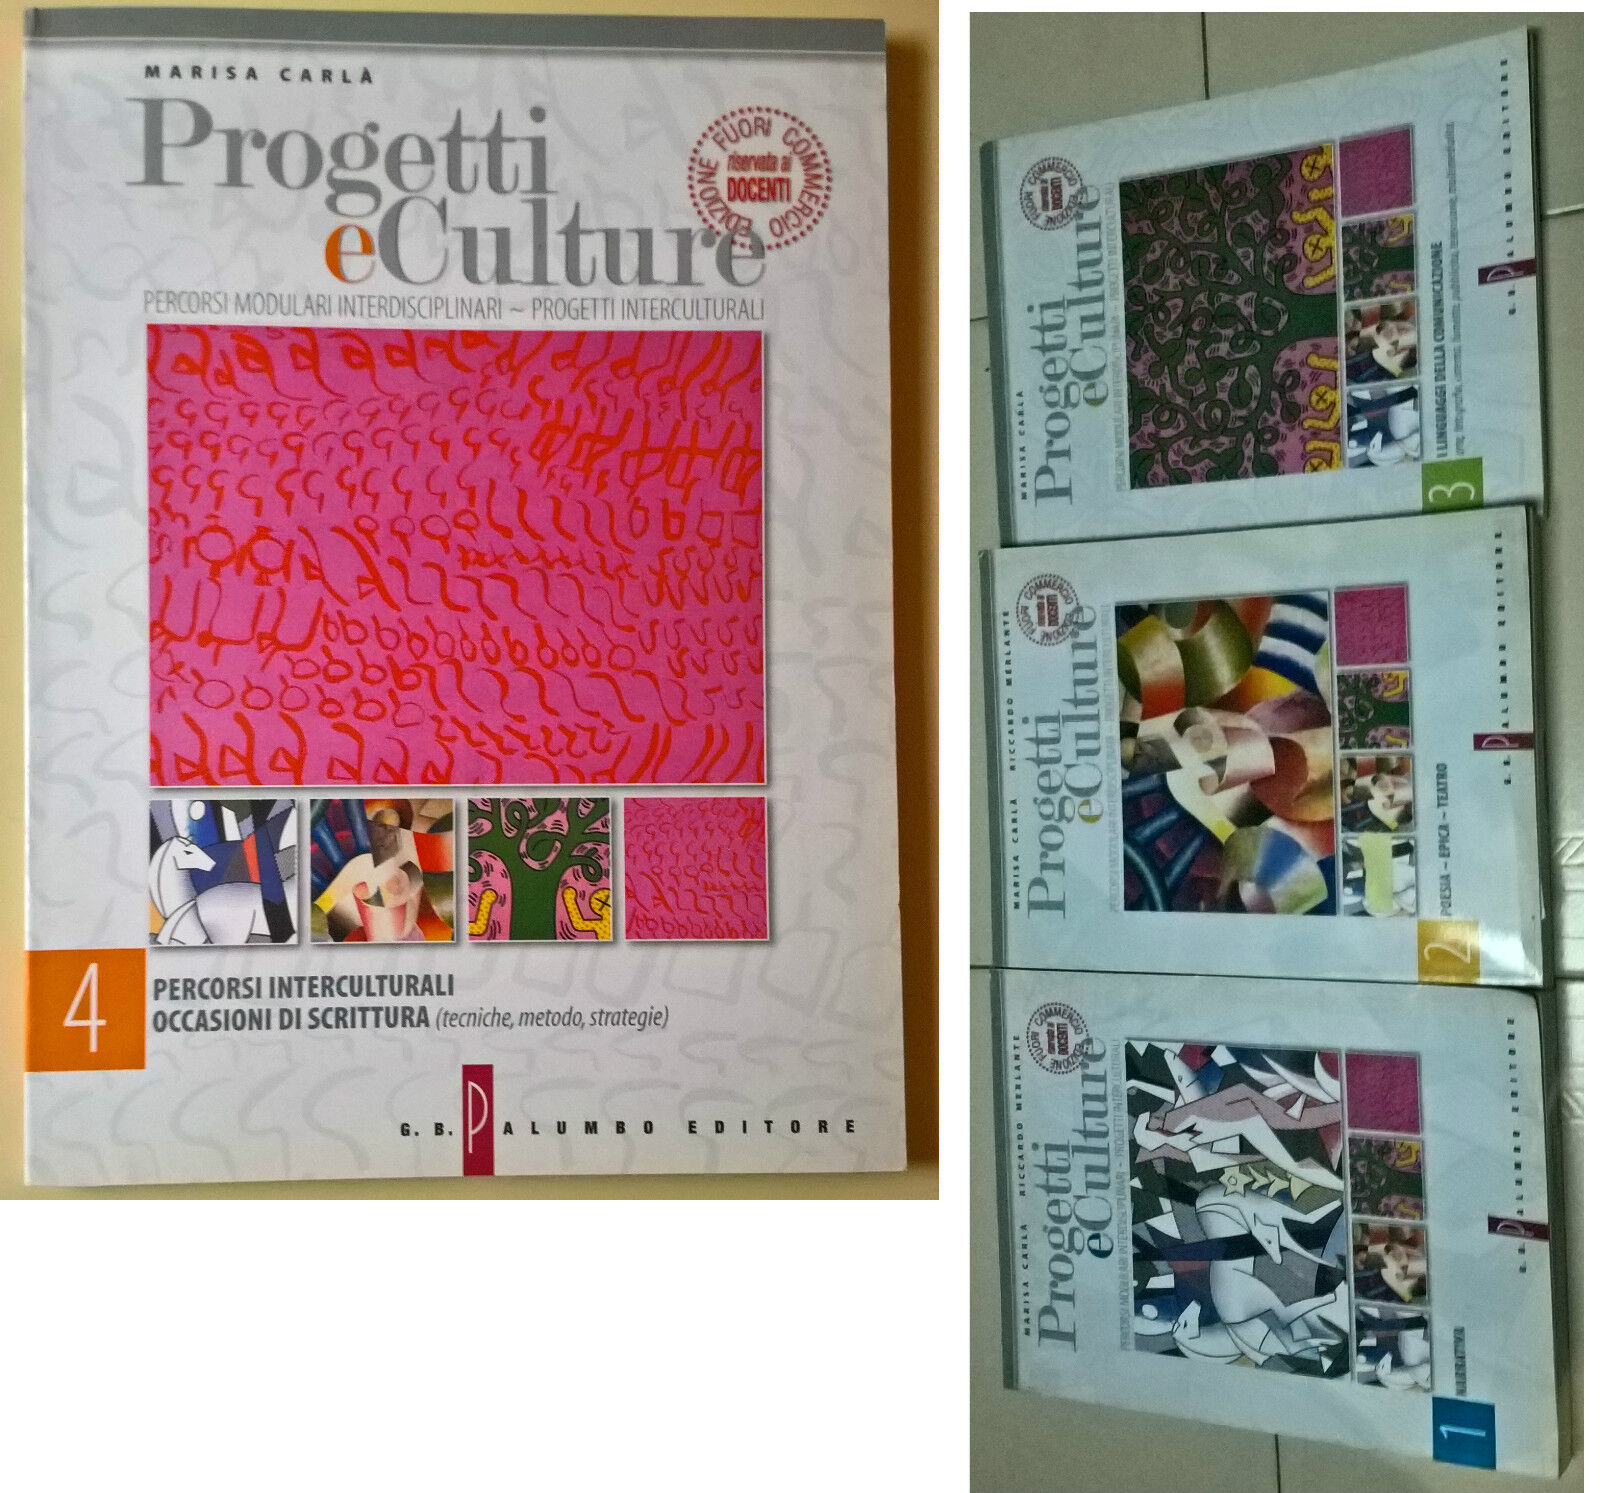 4 Voll. Progetti e culture - Carl?, Merlante - 2003, G. B. Palumbo - L